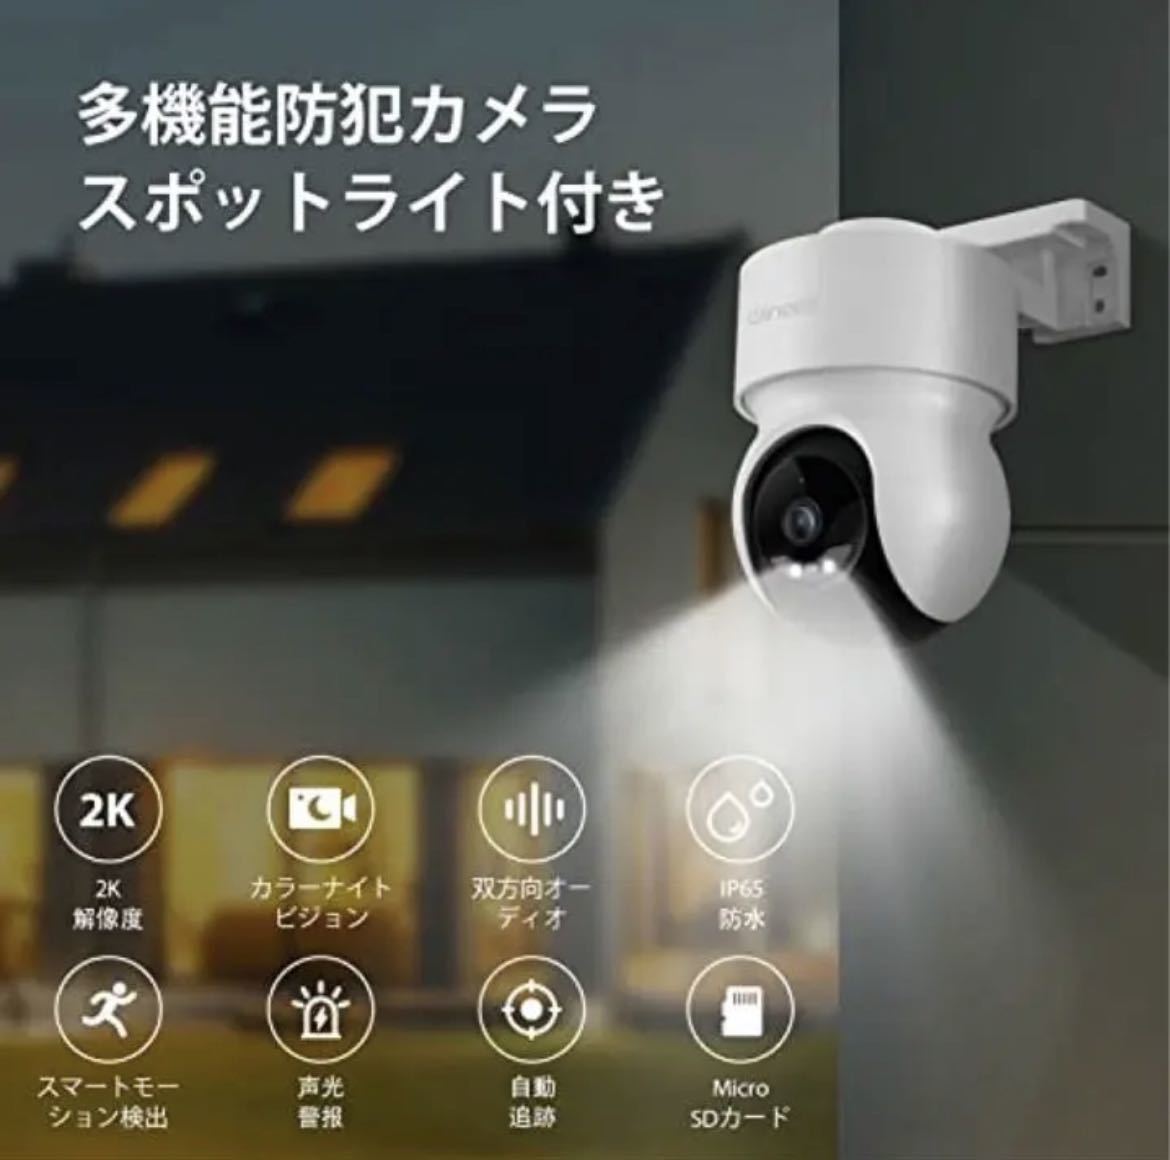 防犯カメラ ワイヤレス 屋外 監視カメラ 屋外カメラ 2K解像度 IP65防水